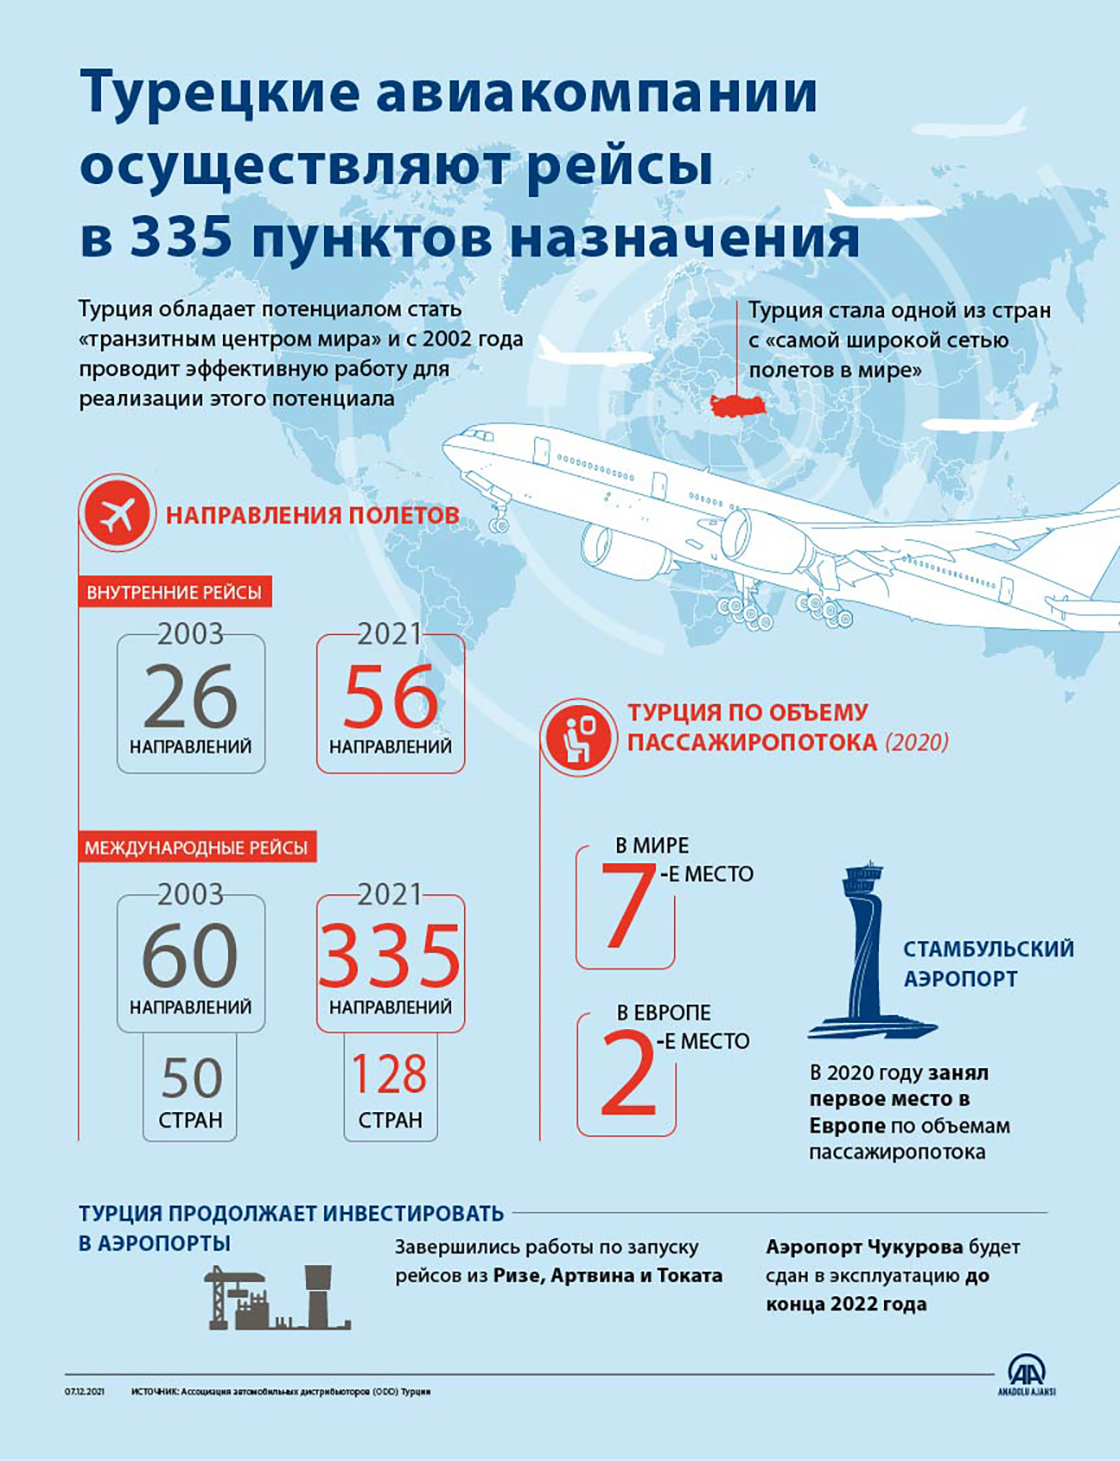 Турецкие авиакомпании осуществляют рейсы в 335 пунктов назначения